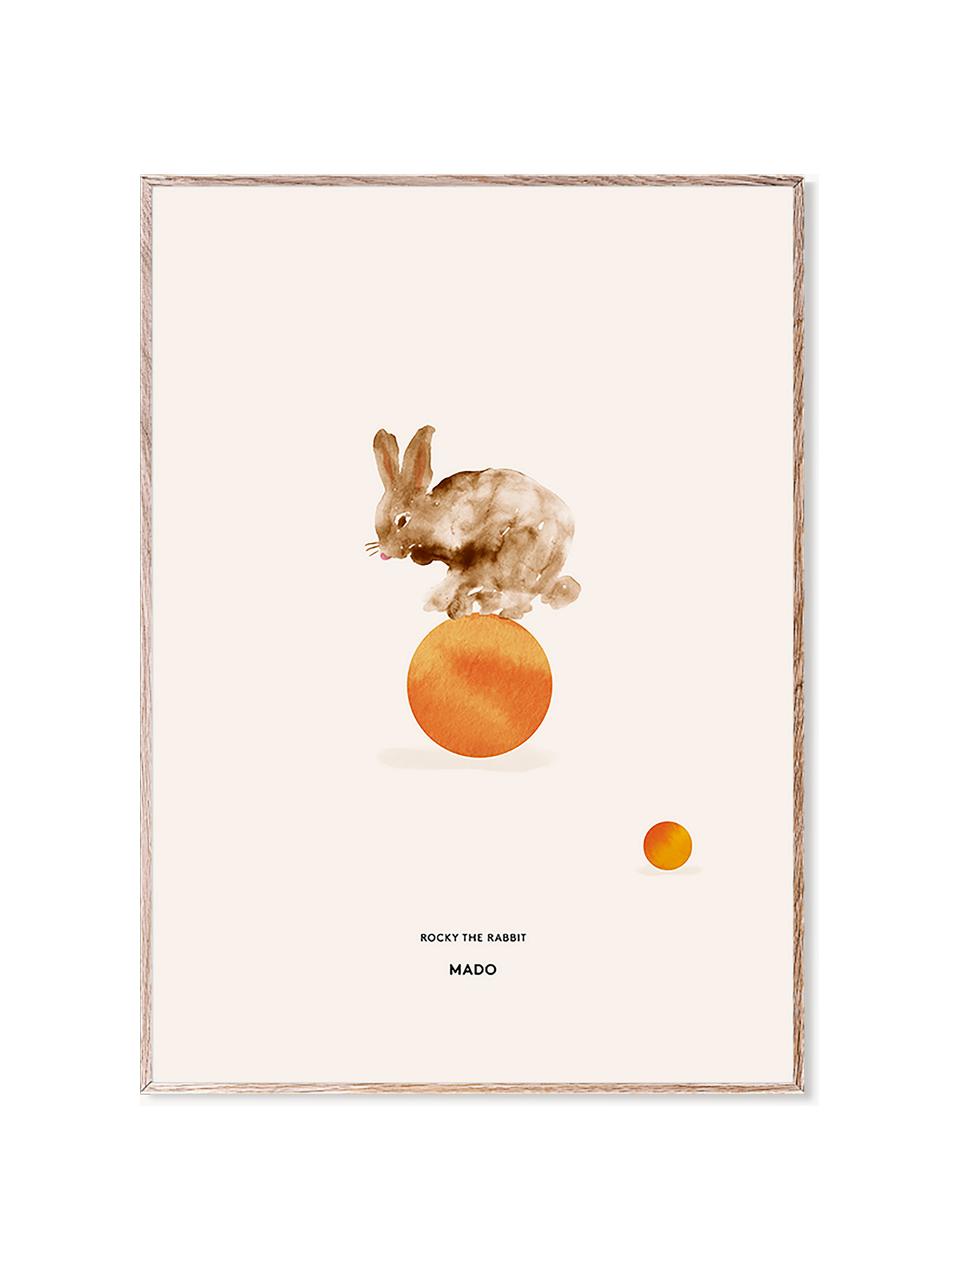 Plakát Rocky the Rabbit, 230 g matný zušlechtěný papír, digitální tisk s 12 barvami.

Tento produkt je vyroben z udržitelných zdrojů dřeva s certifikací FSC®., Odstíny béžové, oranžová, Š 50 cm, V 70 cm